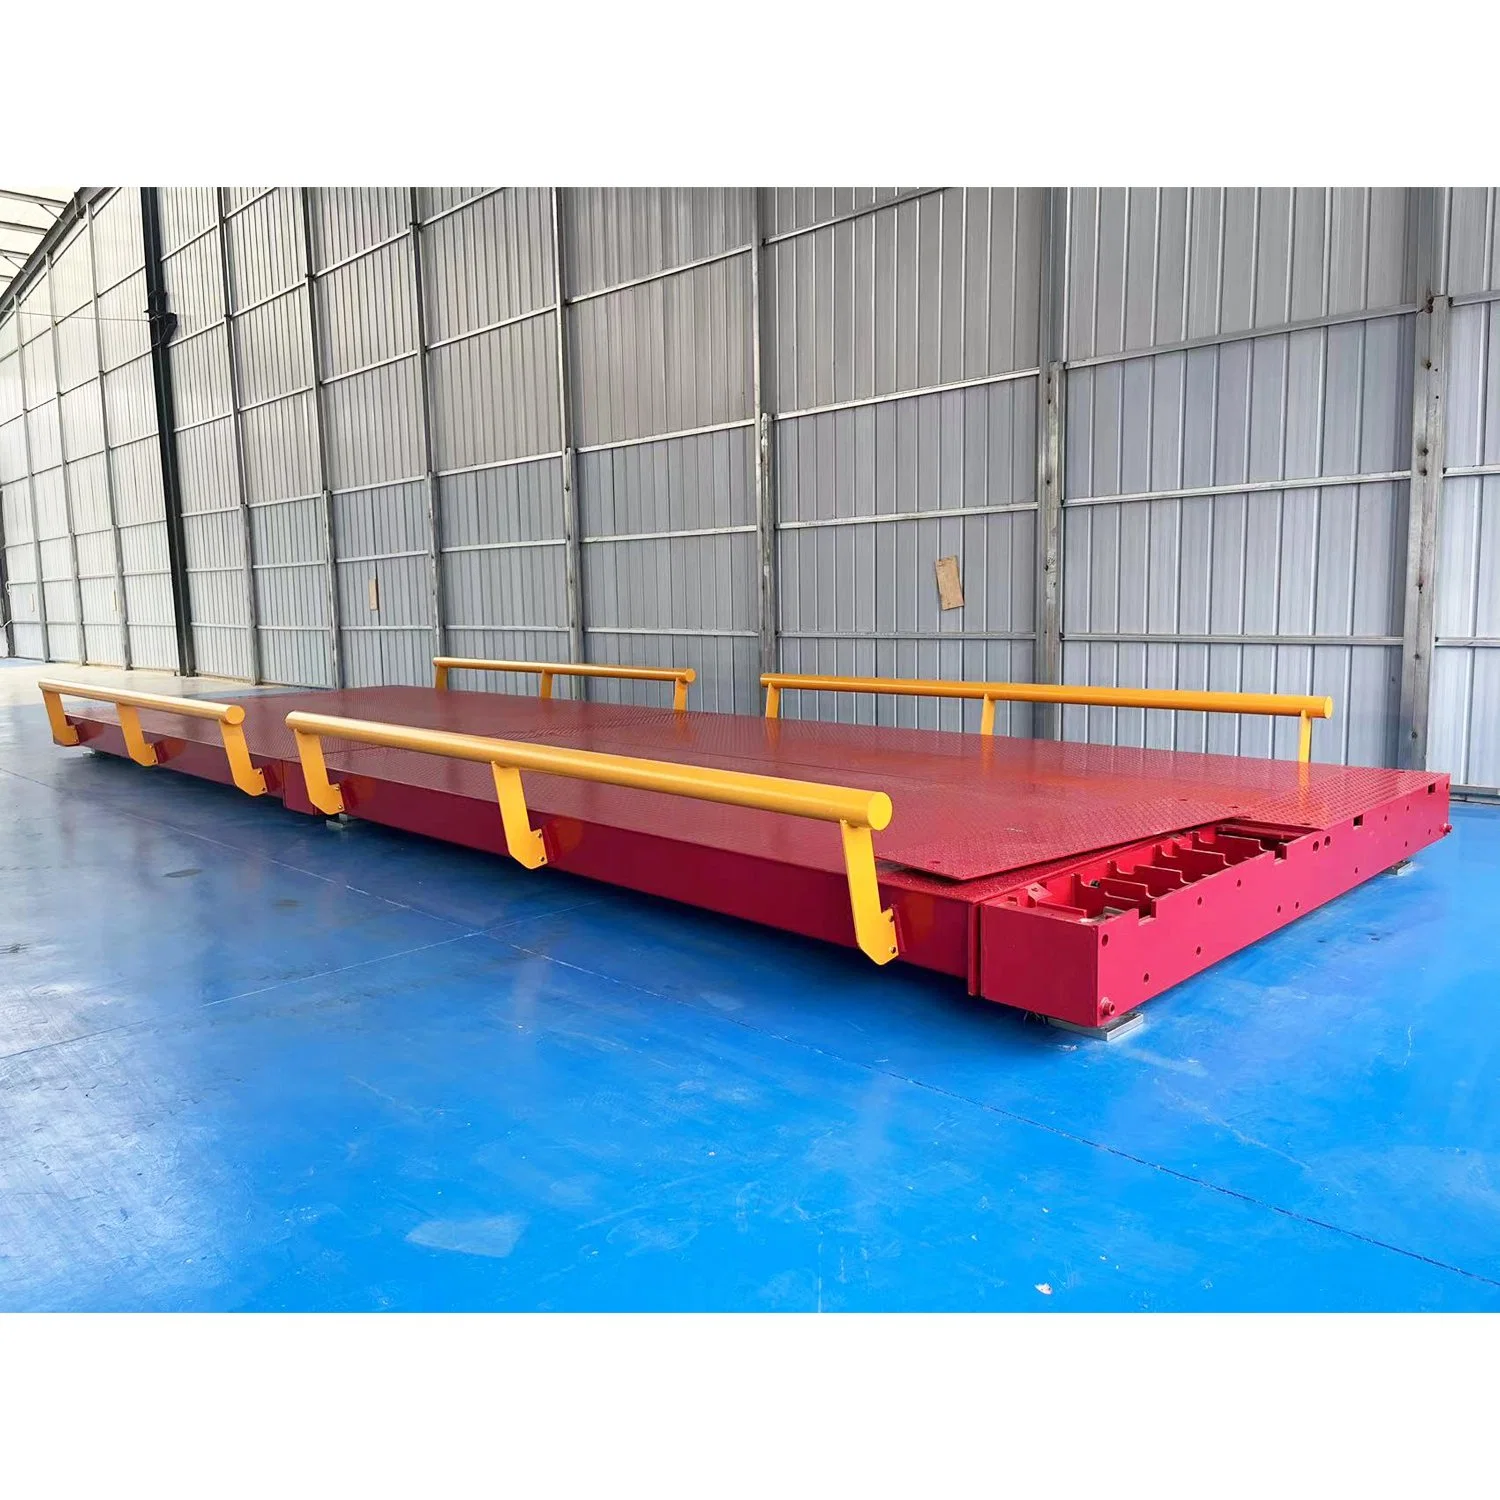 Balança de camião Modular Steel Weighbridge com peso para veículo aprovado pela NTEP Escala